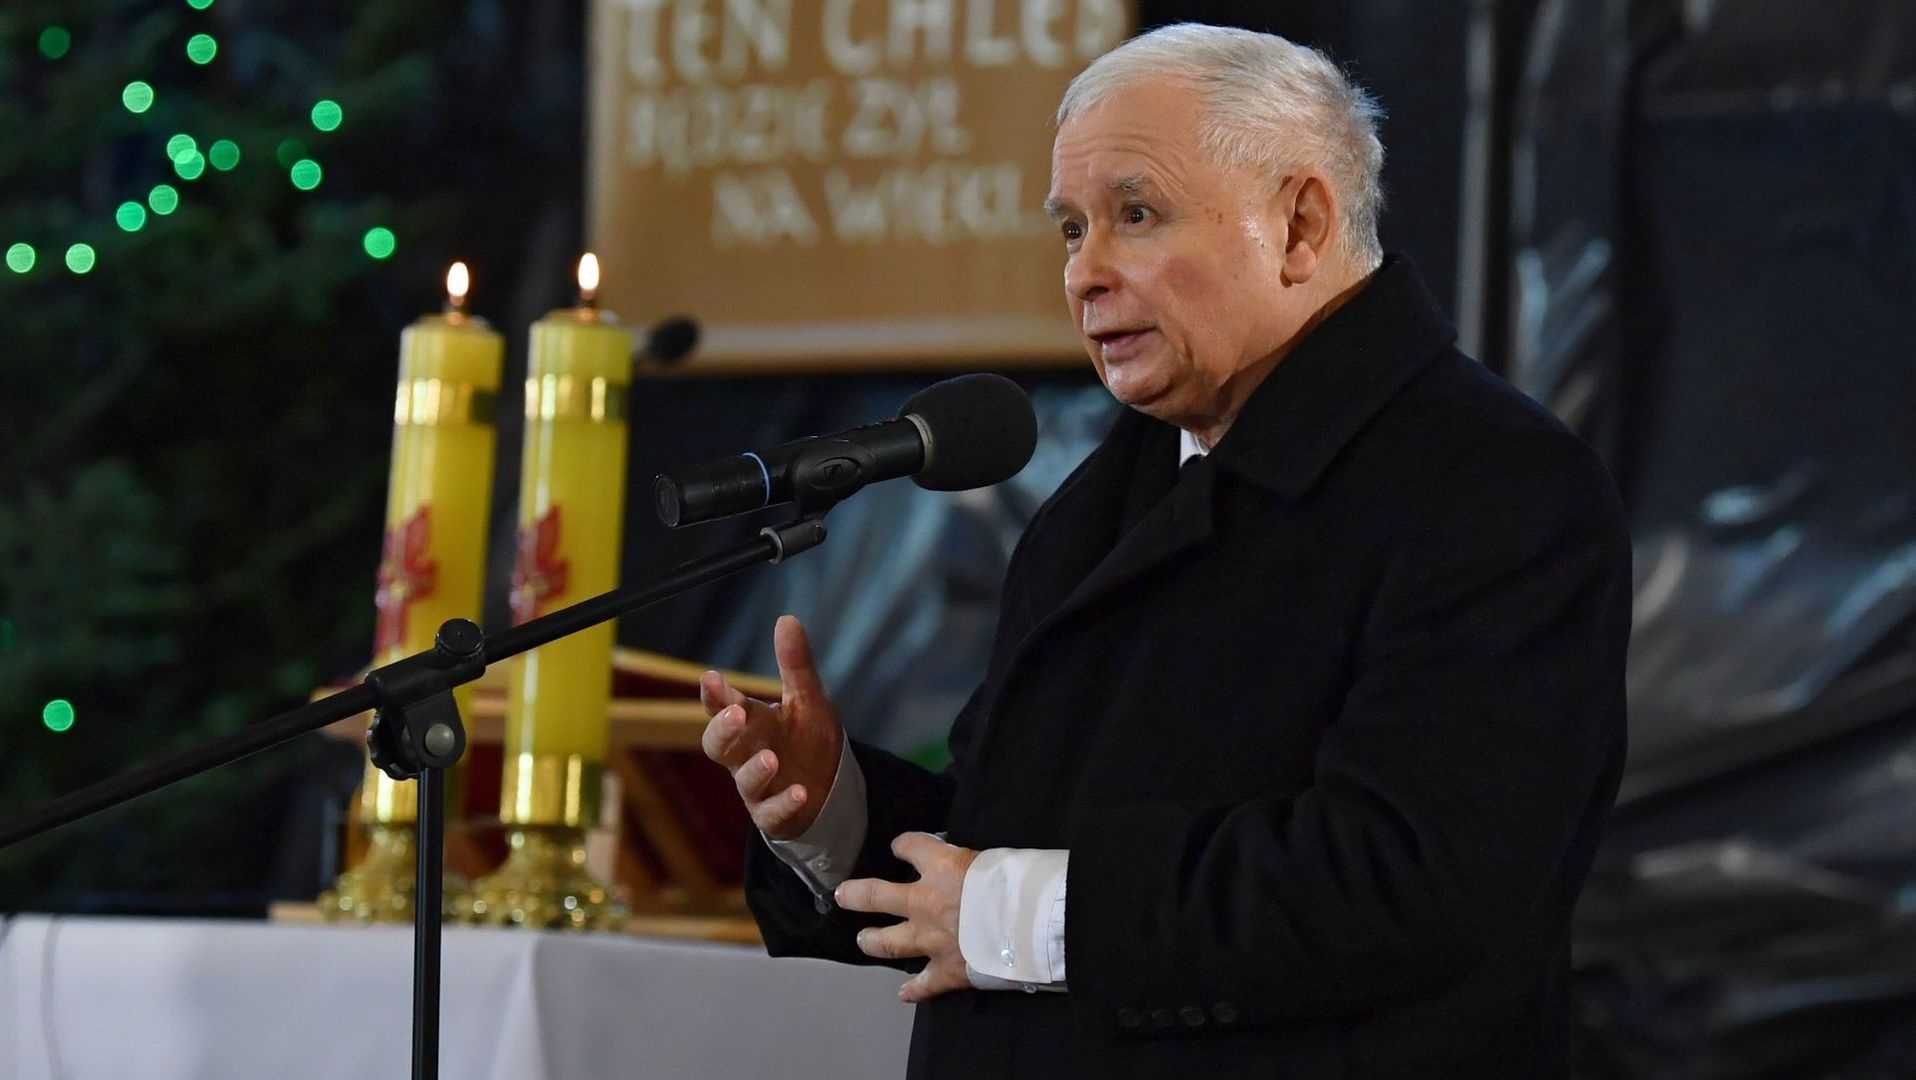 Prezes PiS przemawiający w kościele w Starachowicach: "Dzisiaj odrzucenie zła jest czymś niezwykle istotnym, bo zło atakuje. Atakuje nasz kraj, ojczyznę, naród. Atakuje instytucję, która jest w centrum naszej tożsamości, atakuje Kościół katolicki"